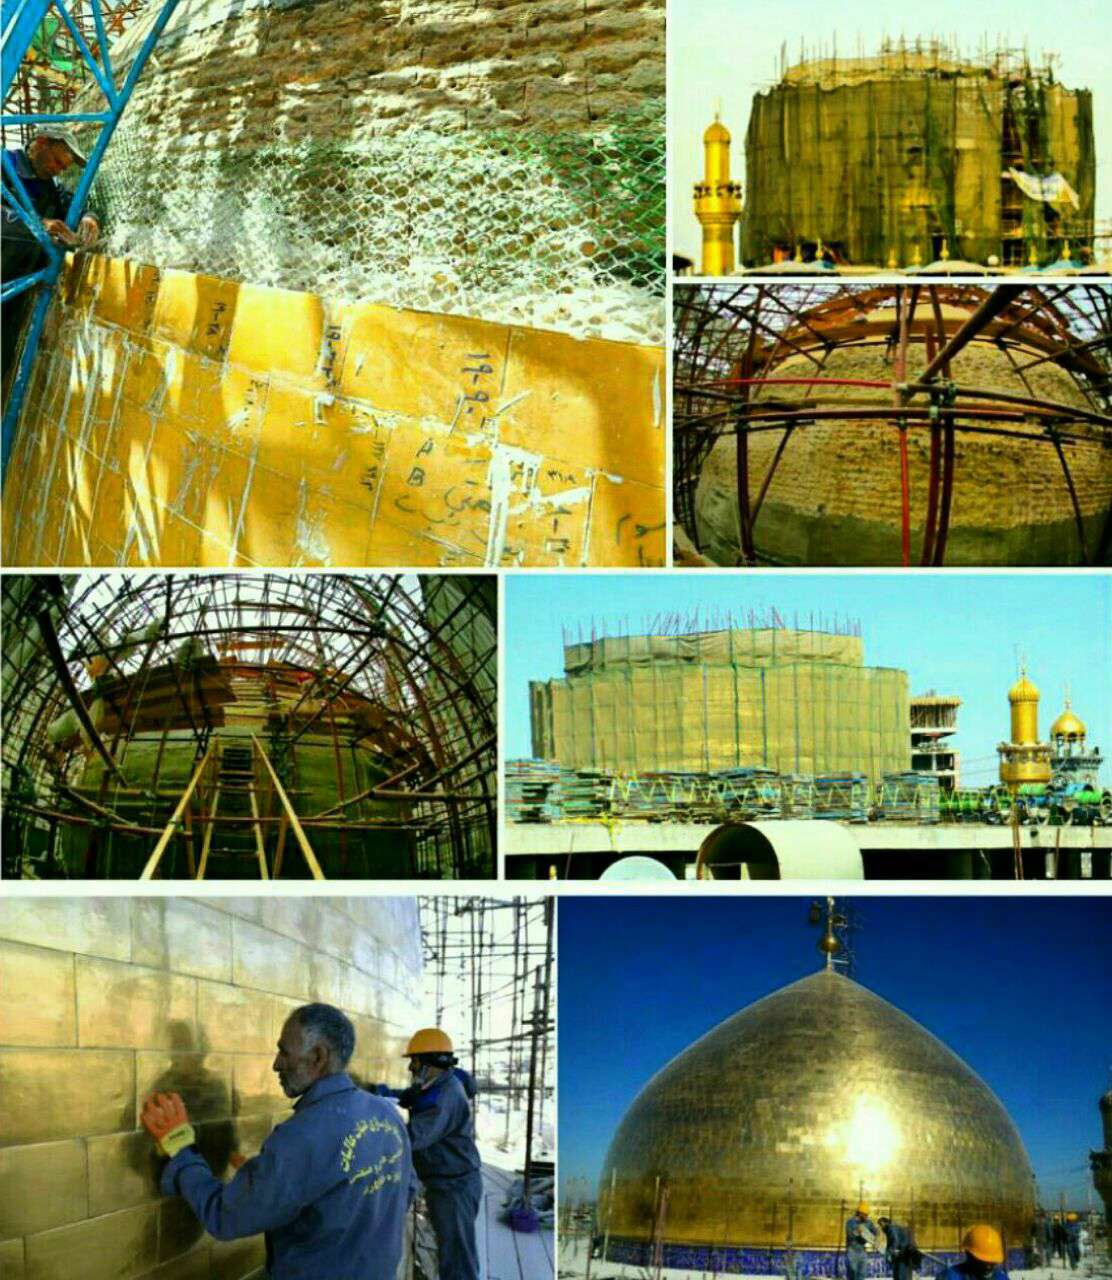 رونمایی از گنبد حرم امیرمومنان علیه السلام

این گنبد بعد از ۳۰۰ سال به دست استادکاران ایرانی و عراقی بازسازی شد